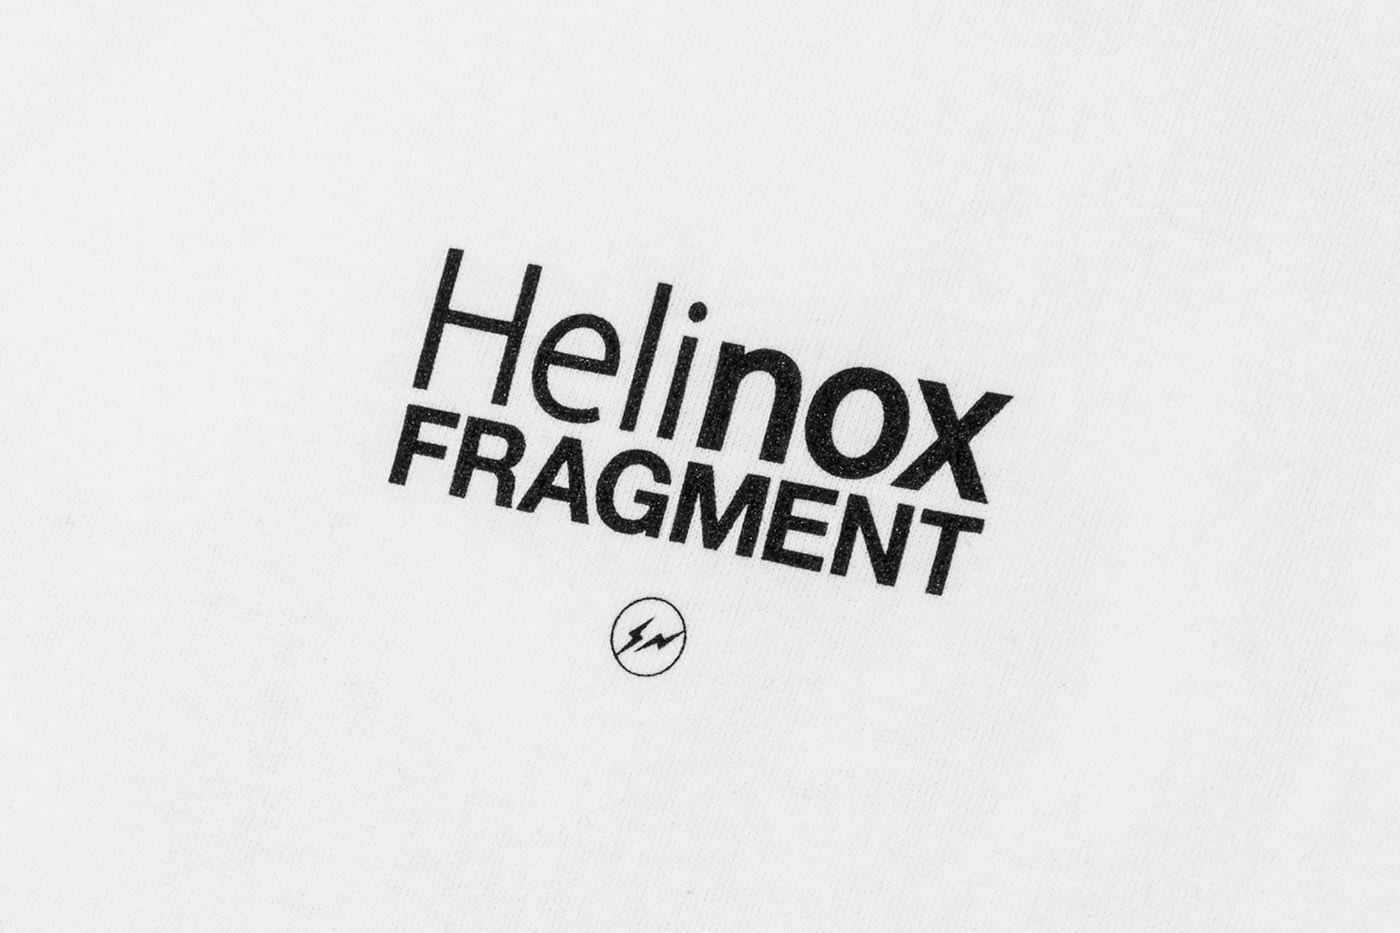 Helinox 正式推出 fragment design 限量聯名 T-shirt 慶祝釜山店鋪開幕